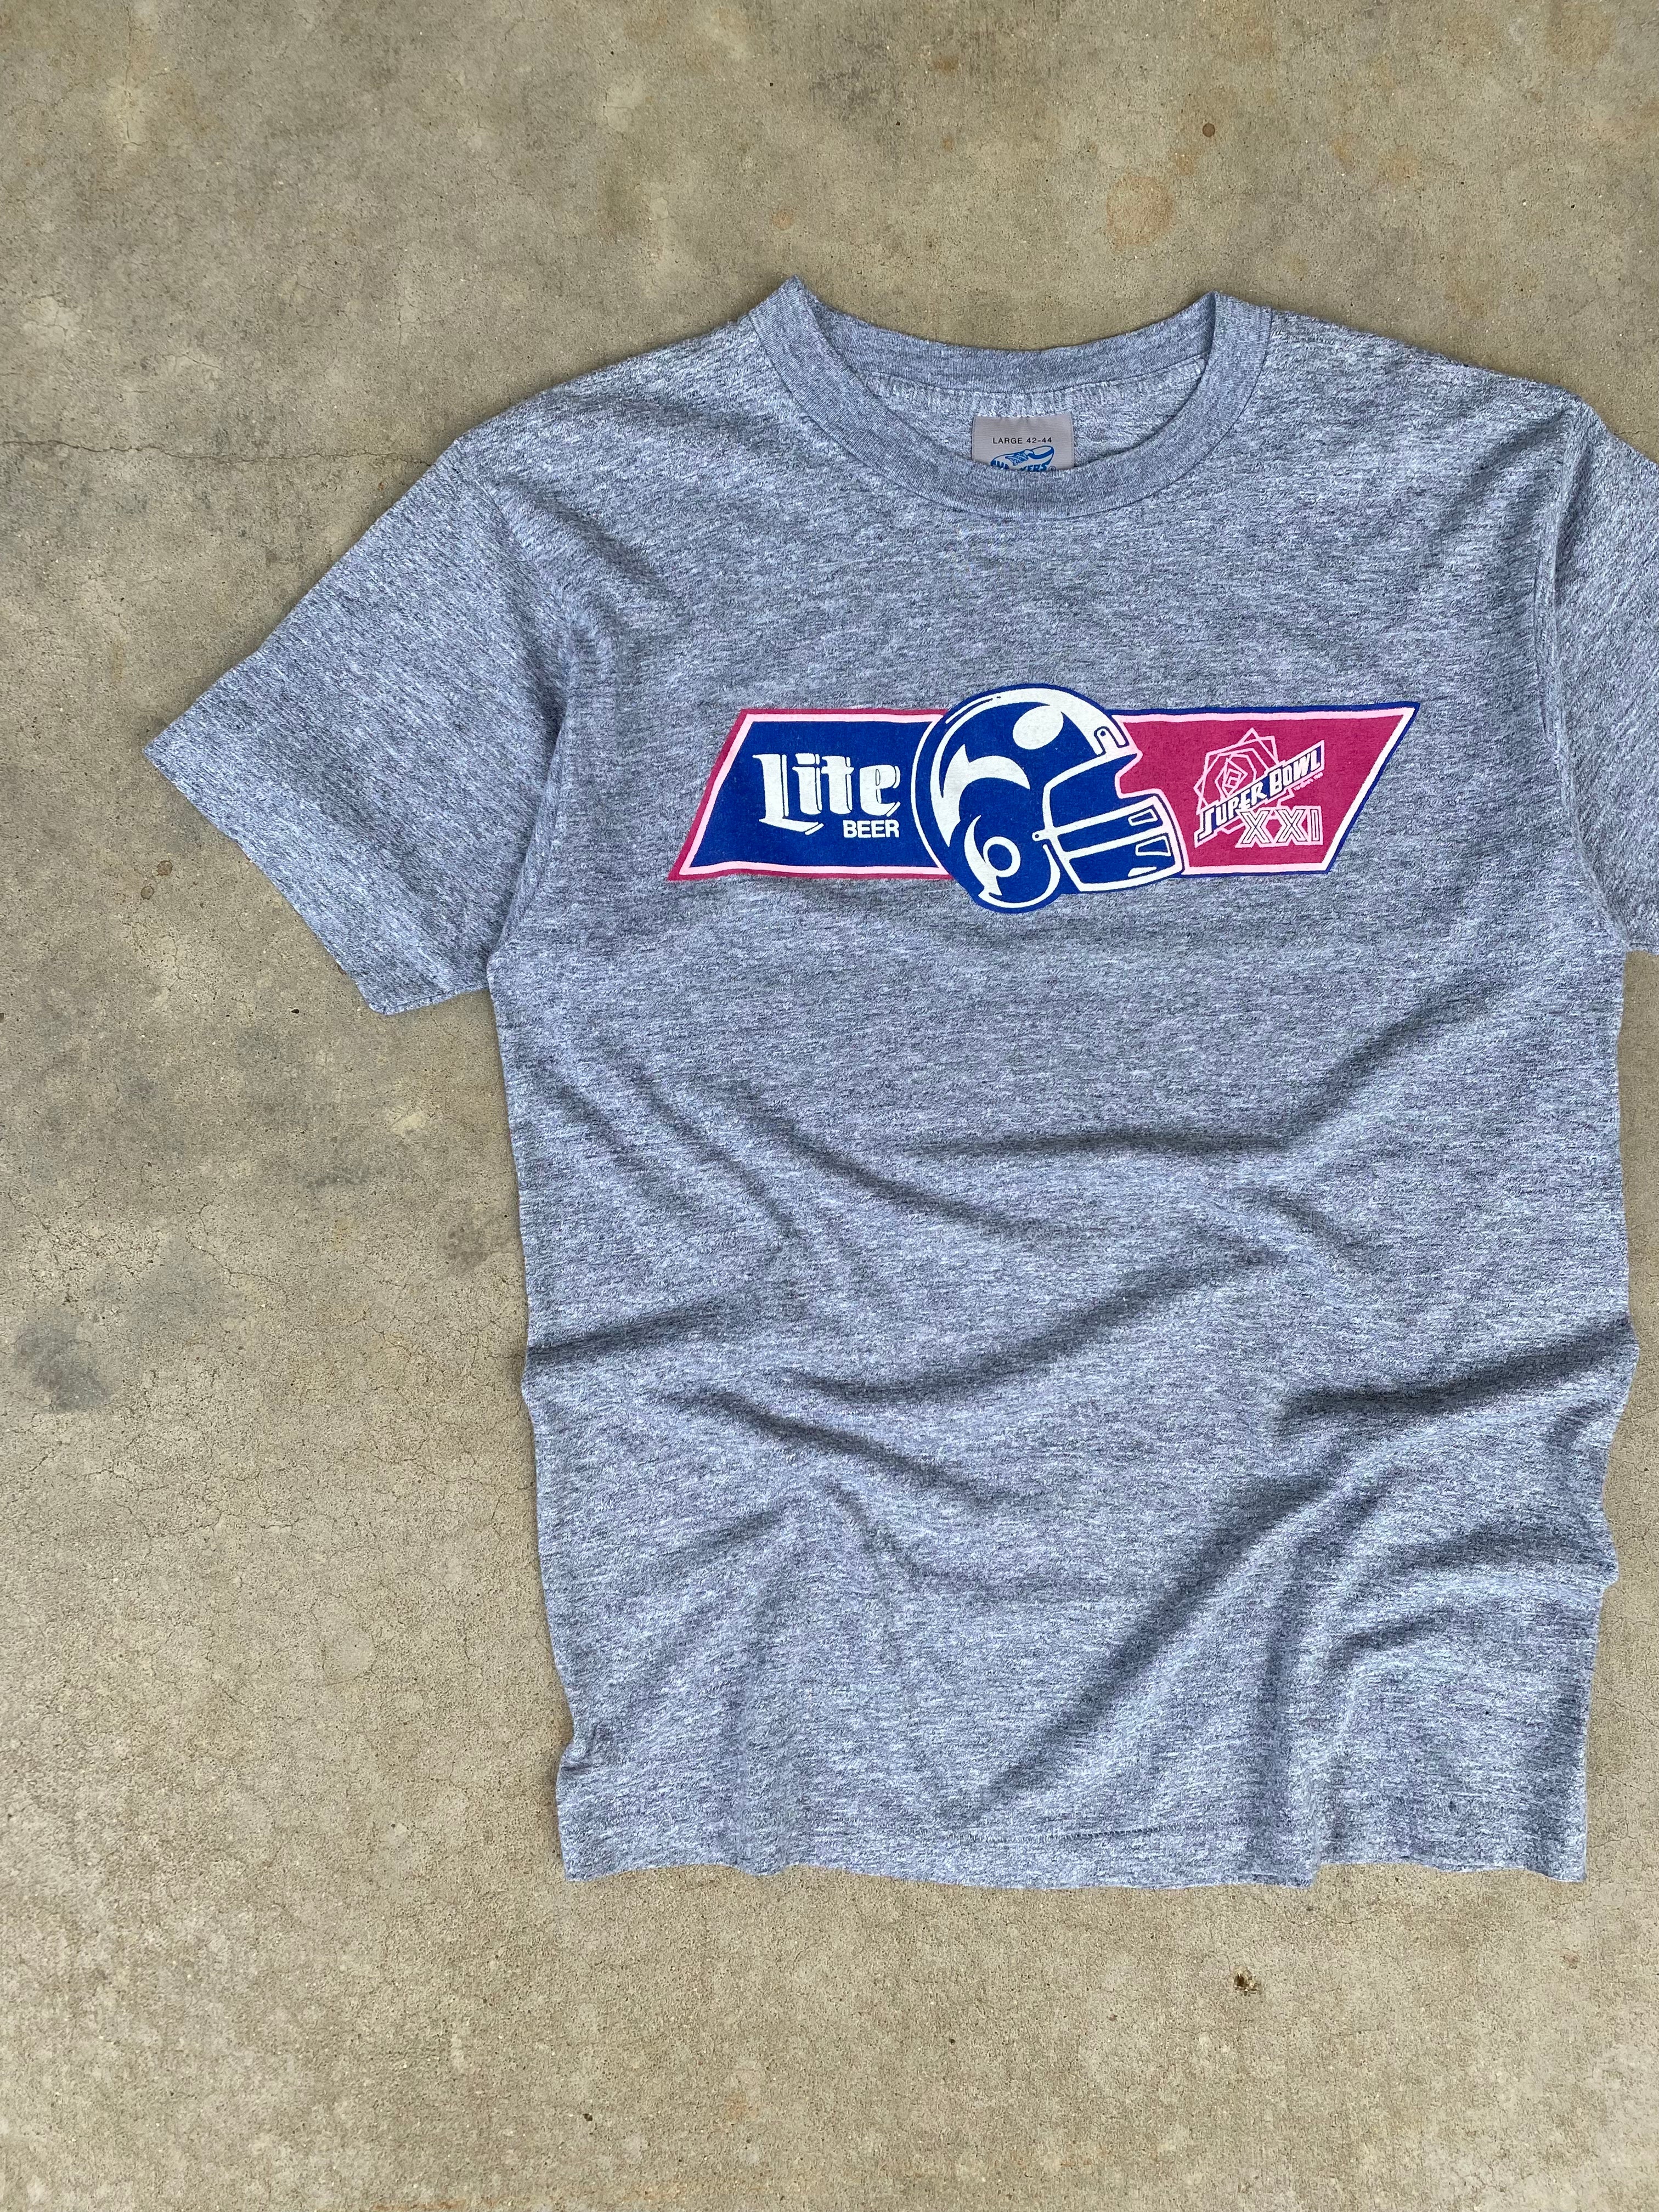 1987 Lite Beer Super Bowl T-Shirt (S)